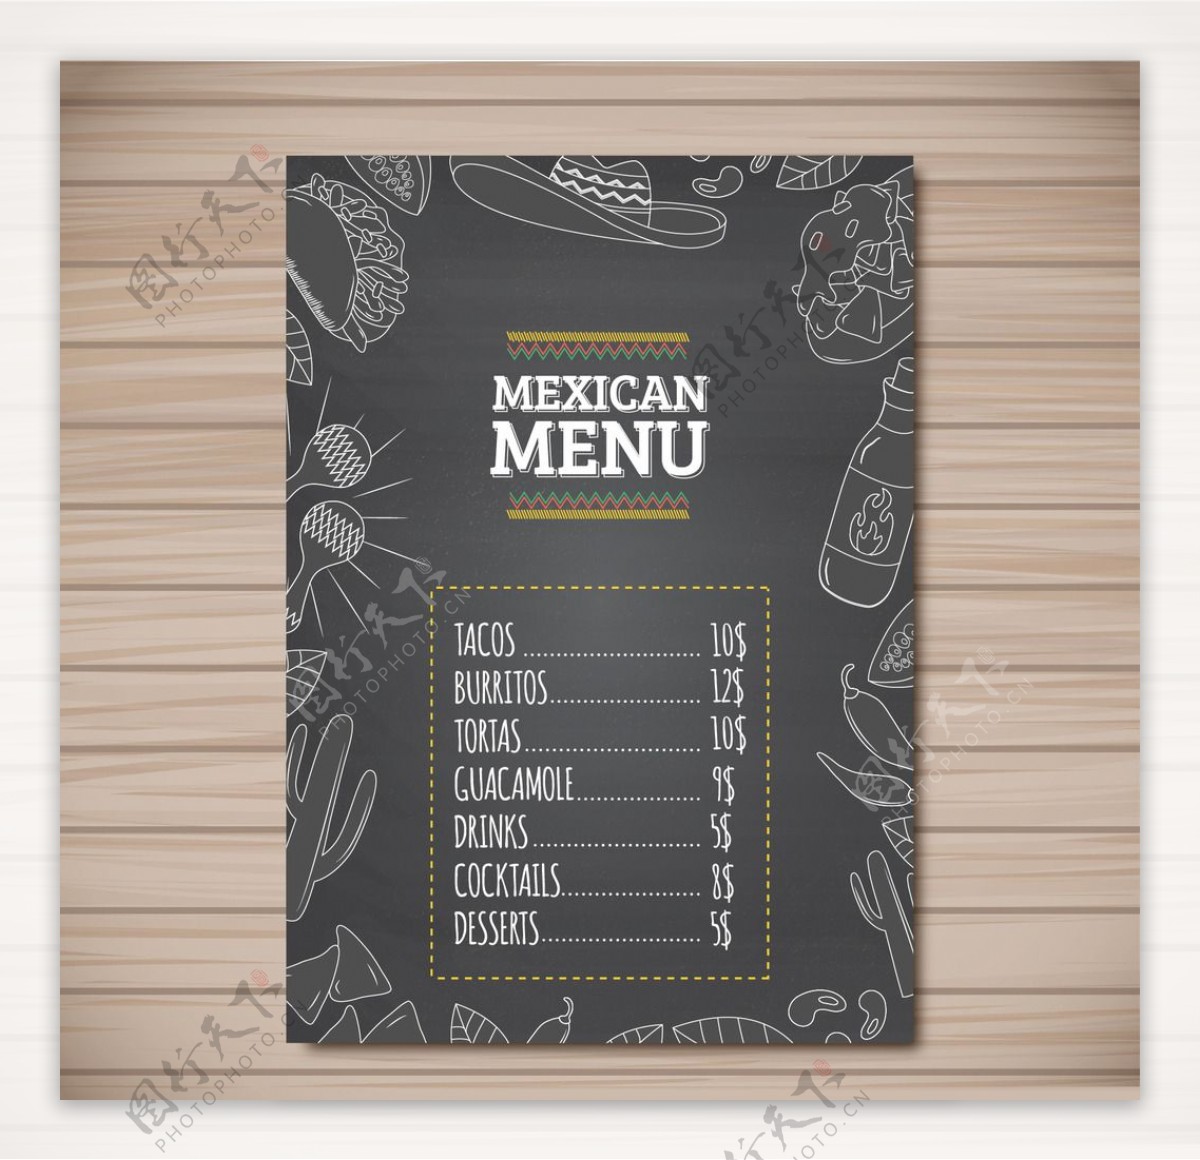 餐厅菜单设计